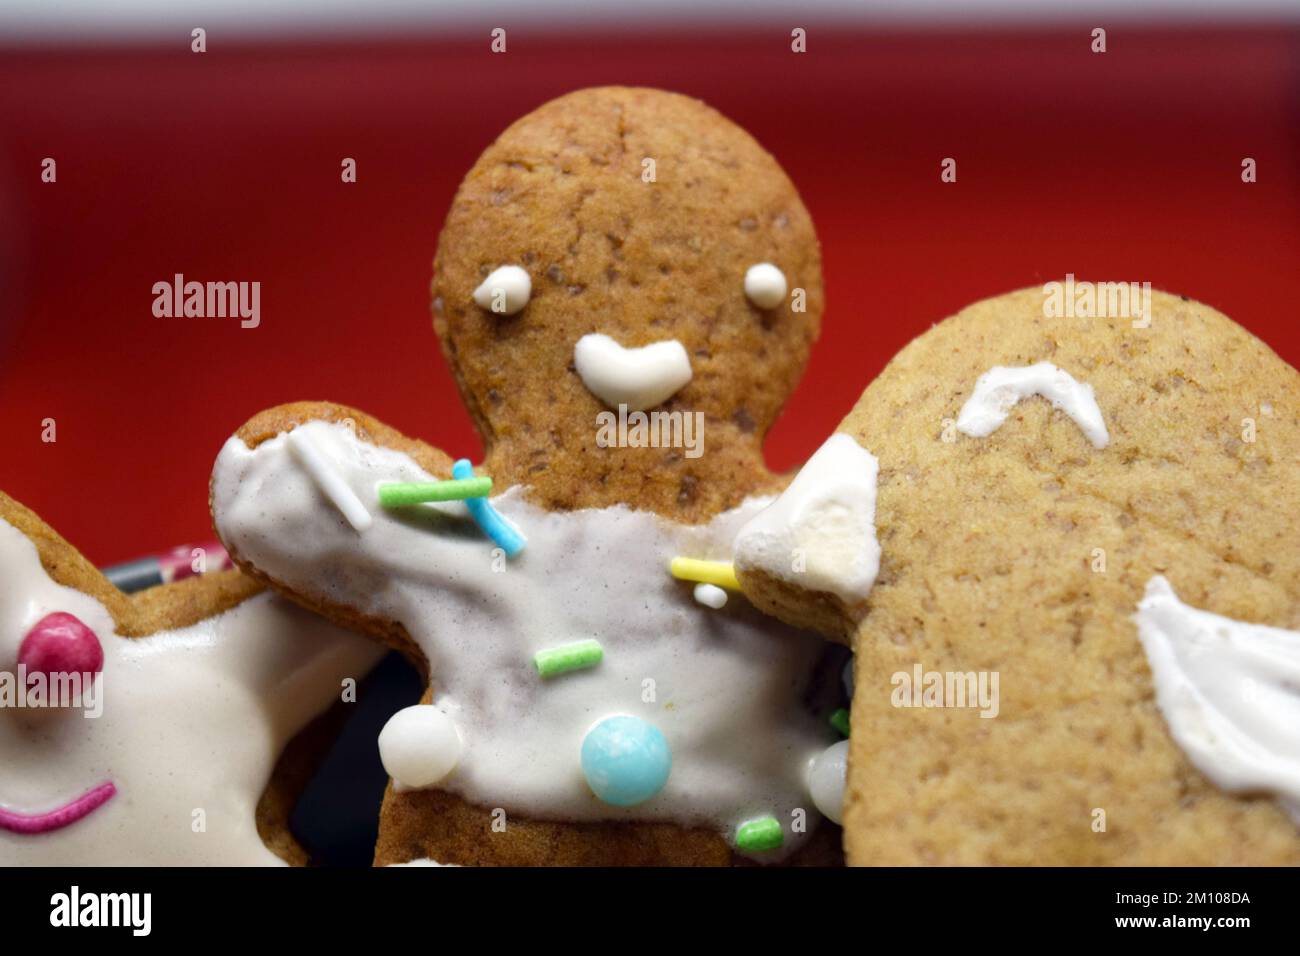 Figurines maison de pain d'épice sucré pour Noël décorées de glaçage blanc et de bonbons colorés : ours en peluche, homme de pain d'épice, arbre de Noël, étoiles. Banque D'Images